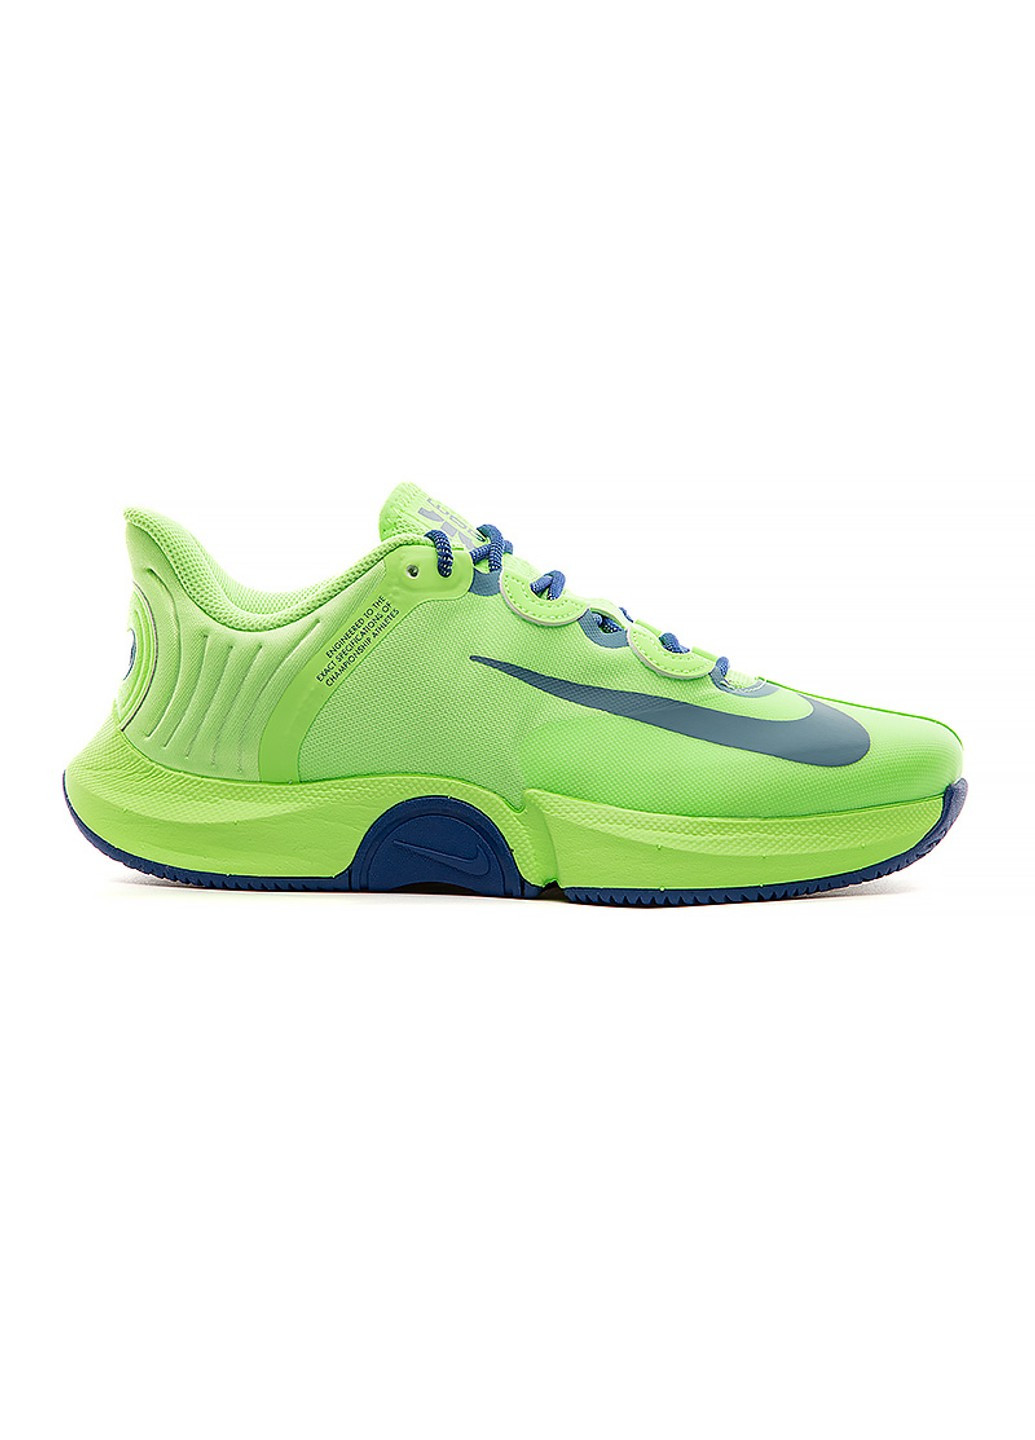 Салатовые демисезонные кроссовки zoom gp turbo hc osaka Nike